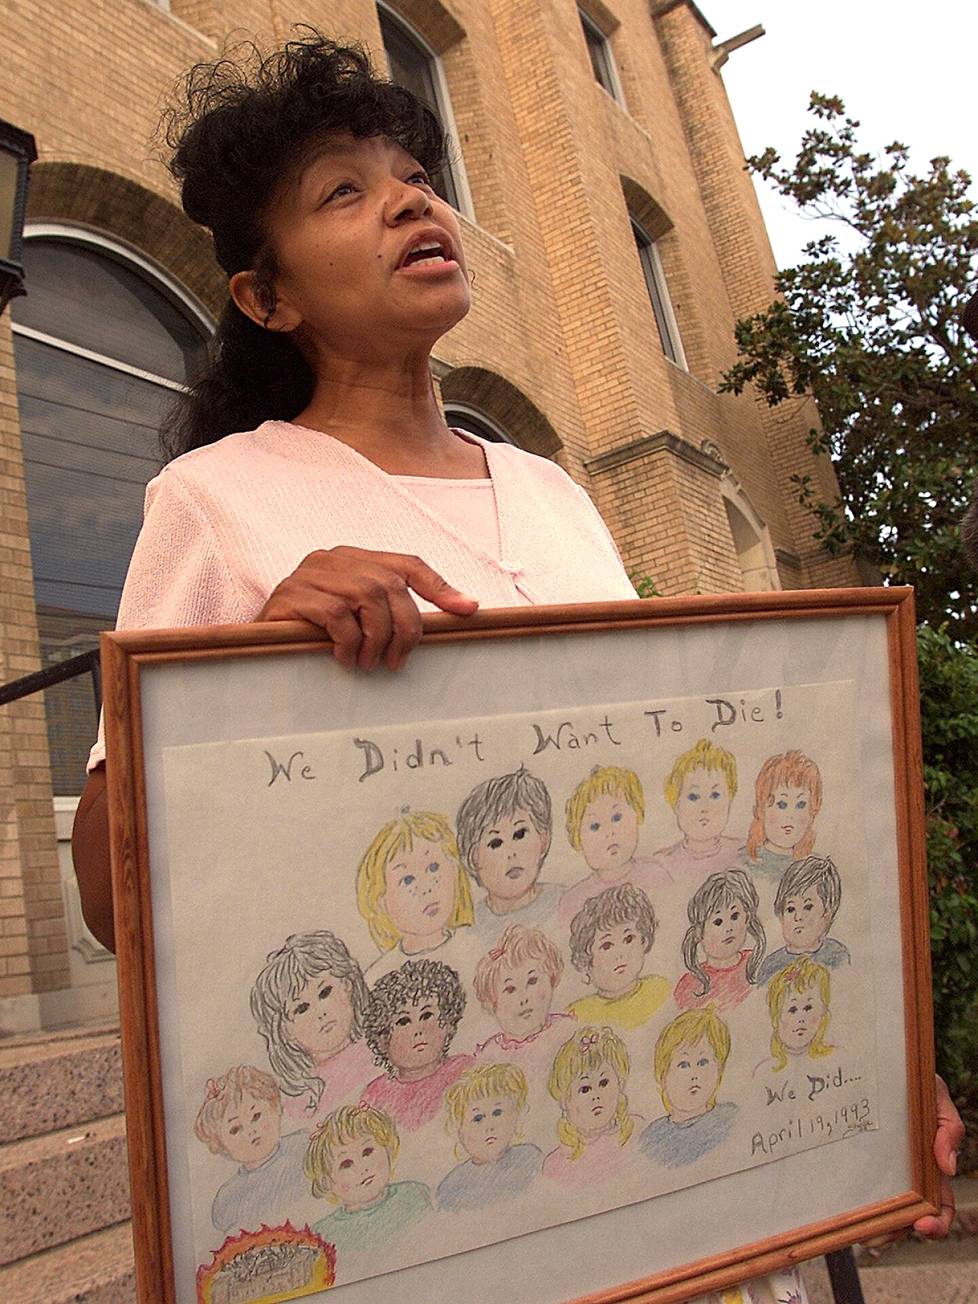 Daavidin oksaan kuulunut Sheila Martin piteli lapsiuhreista muistuttavaa kylttiä Wacon oikeustalon ulkopuolella heinäkuussa 2000. Hän menetti miehensä ja neljä seitsemästä lapsestaan tragediassa.